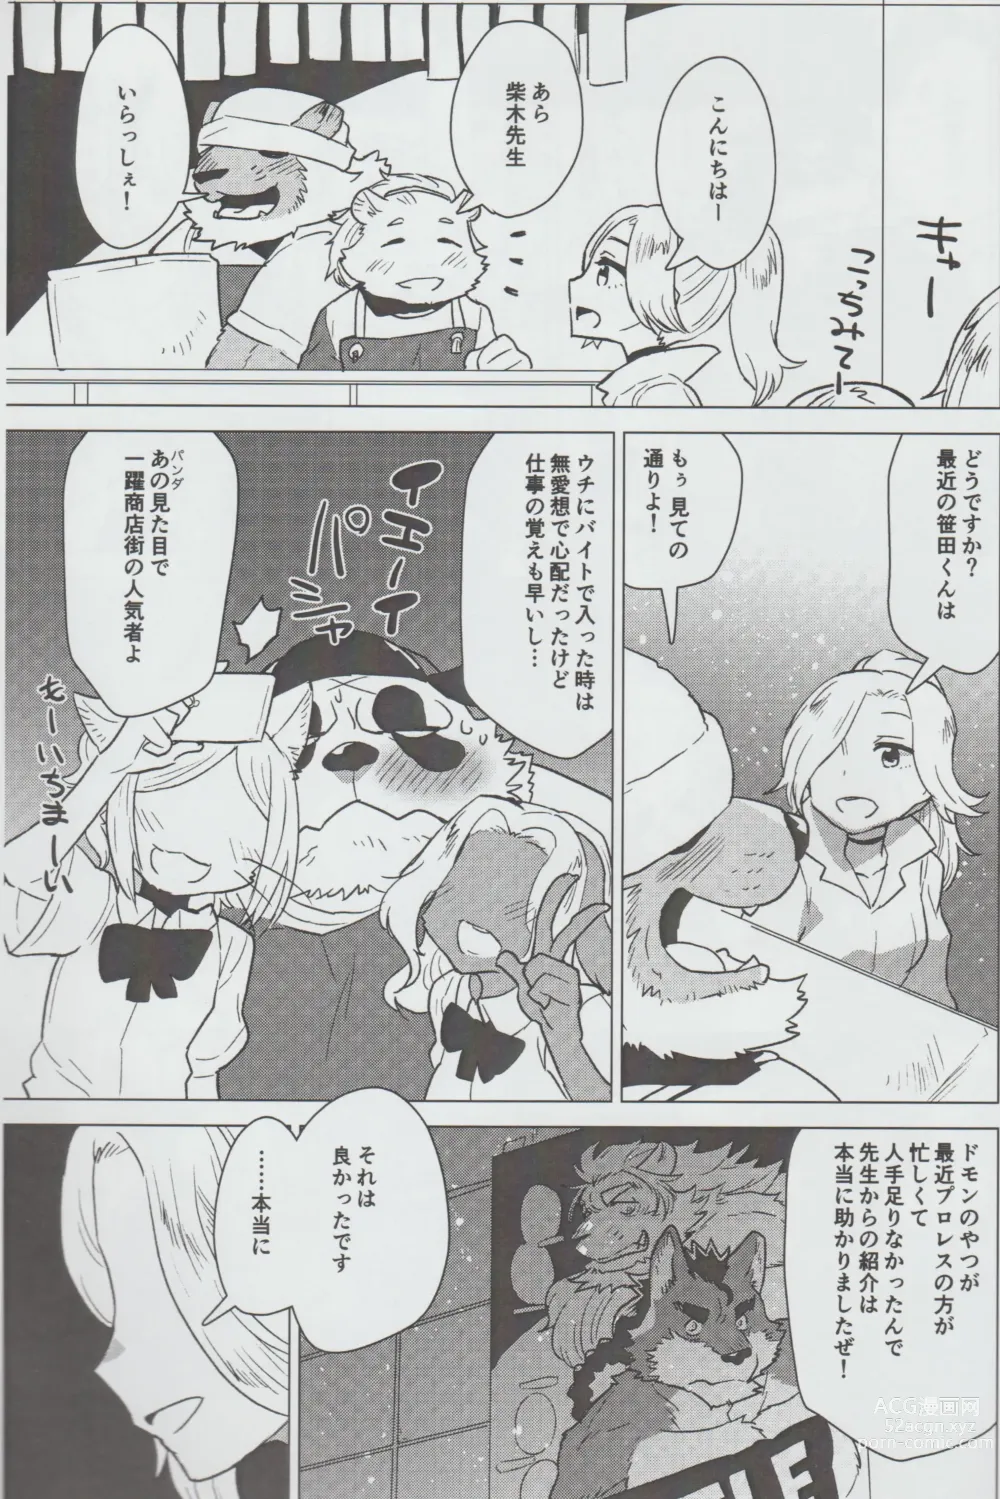 Page 4 of doujinshi Mihoshi Ginza Shopping Street Kaihoushi vol. 07